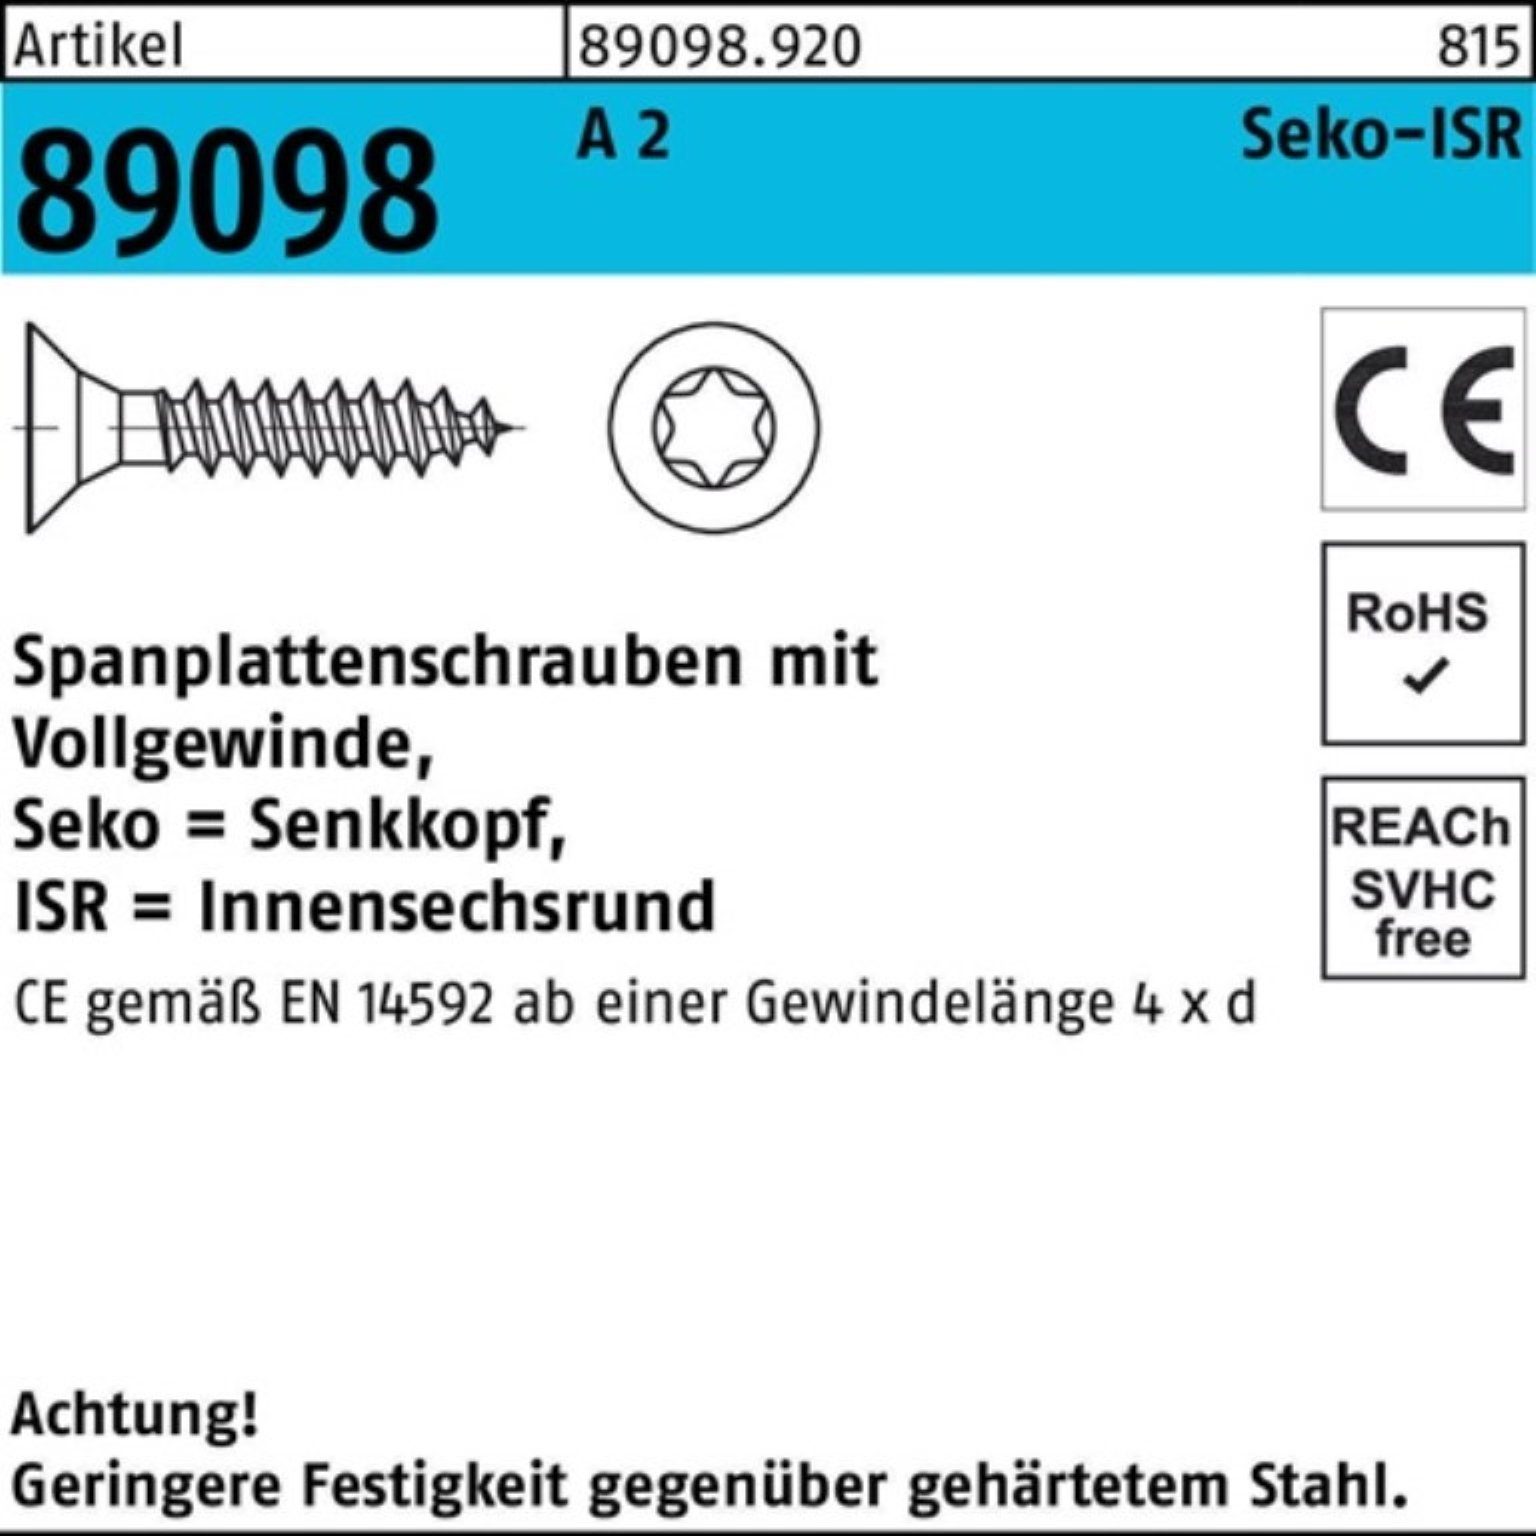 Reyher Spanplattenschraube 1000er Pack Spanplattenschraube R 89098 SEKO ISR VG 5x 40-T25 A 2 1000